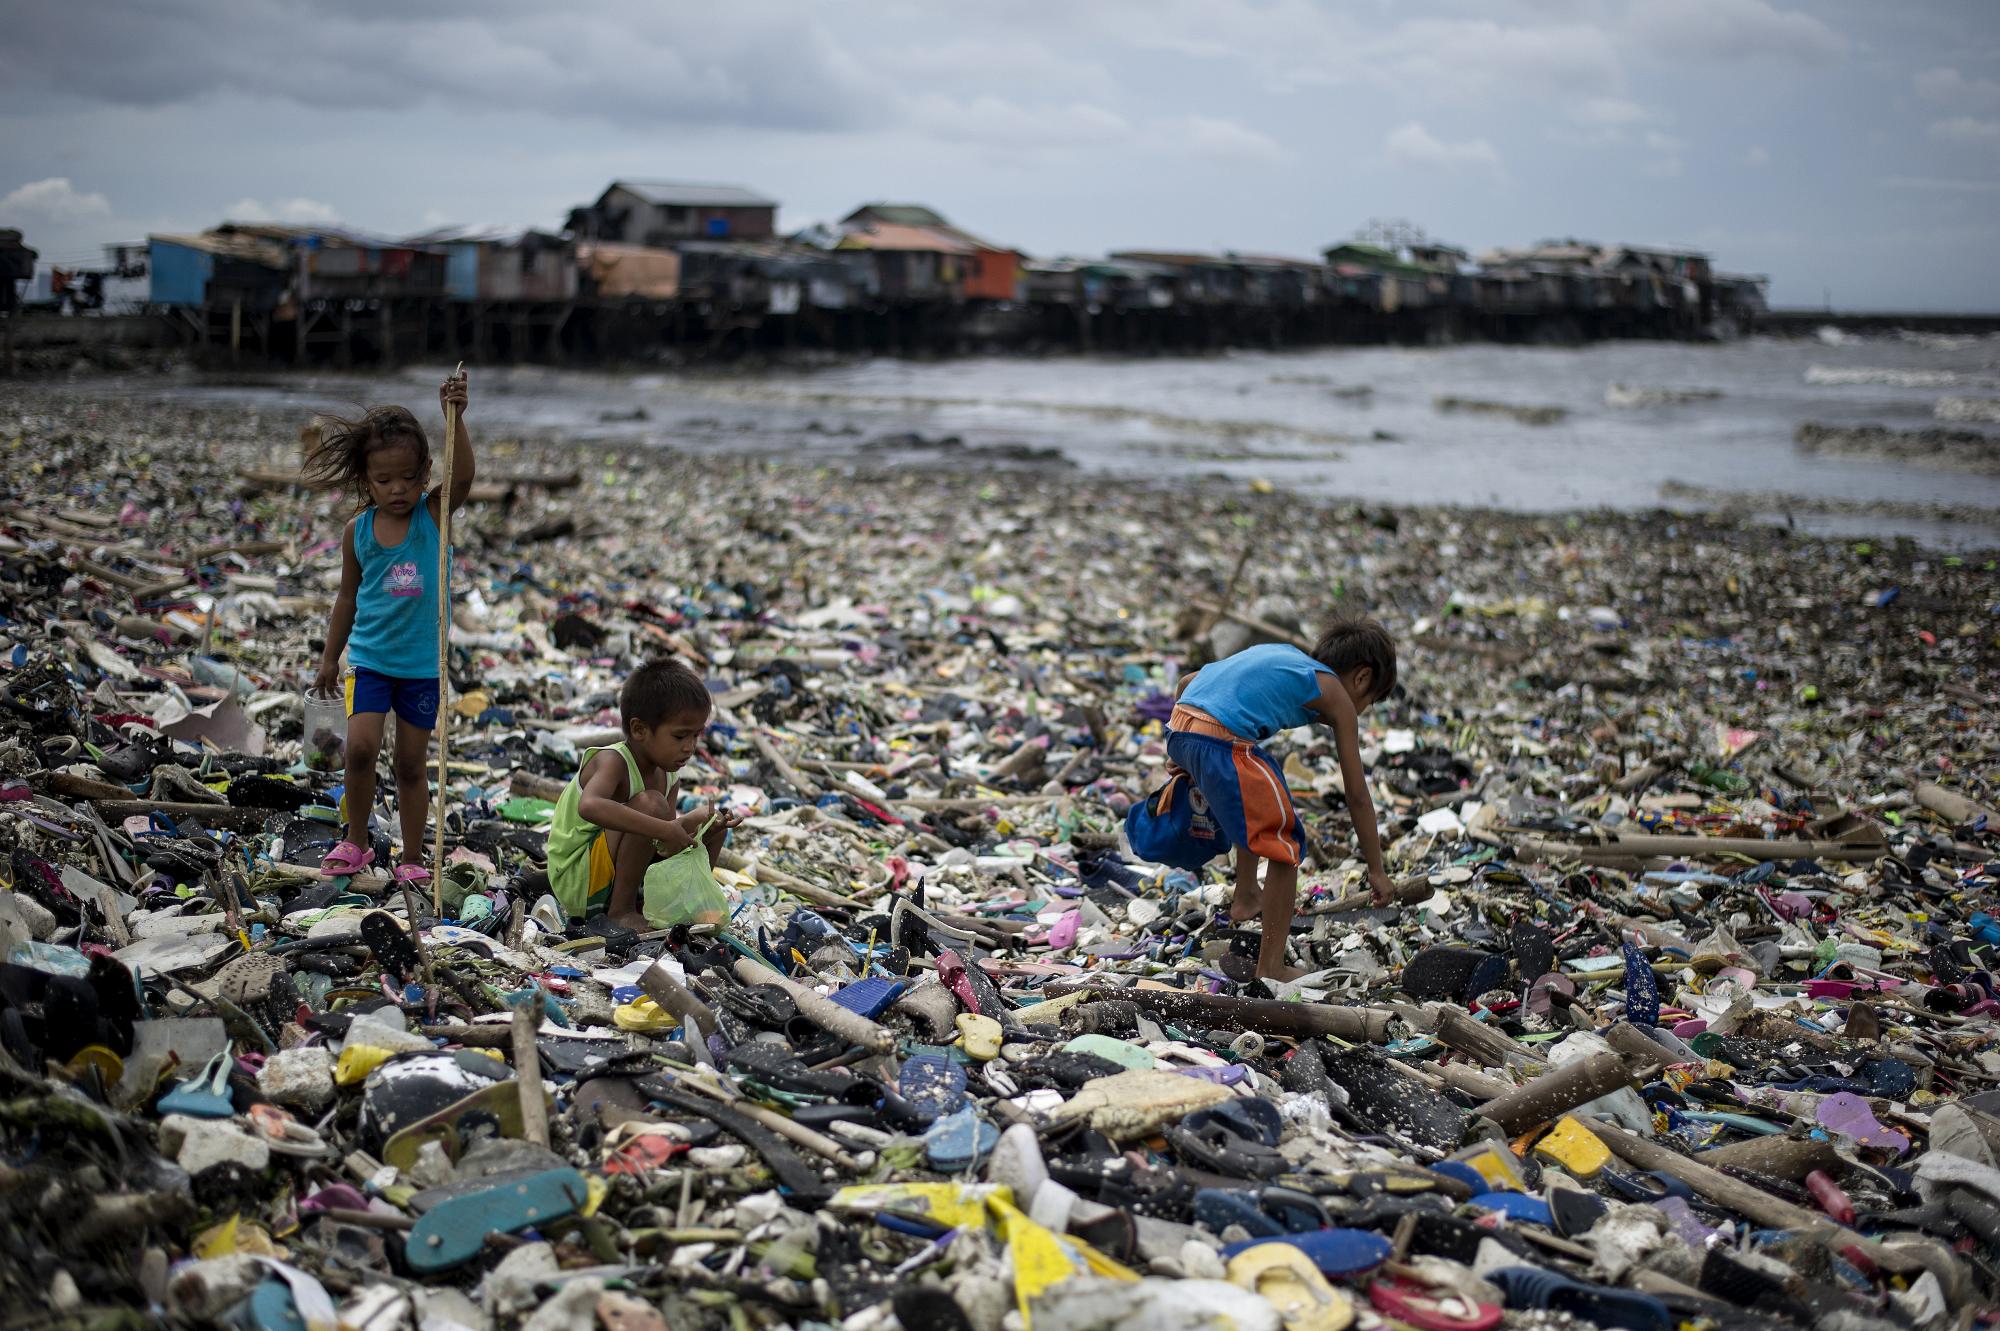 Malajzia több mint száz konténernyi műanyaghulladékot küld vissza egyes országokba